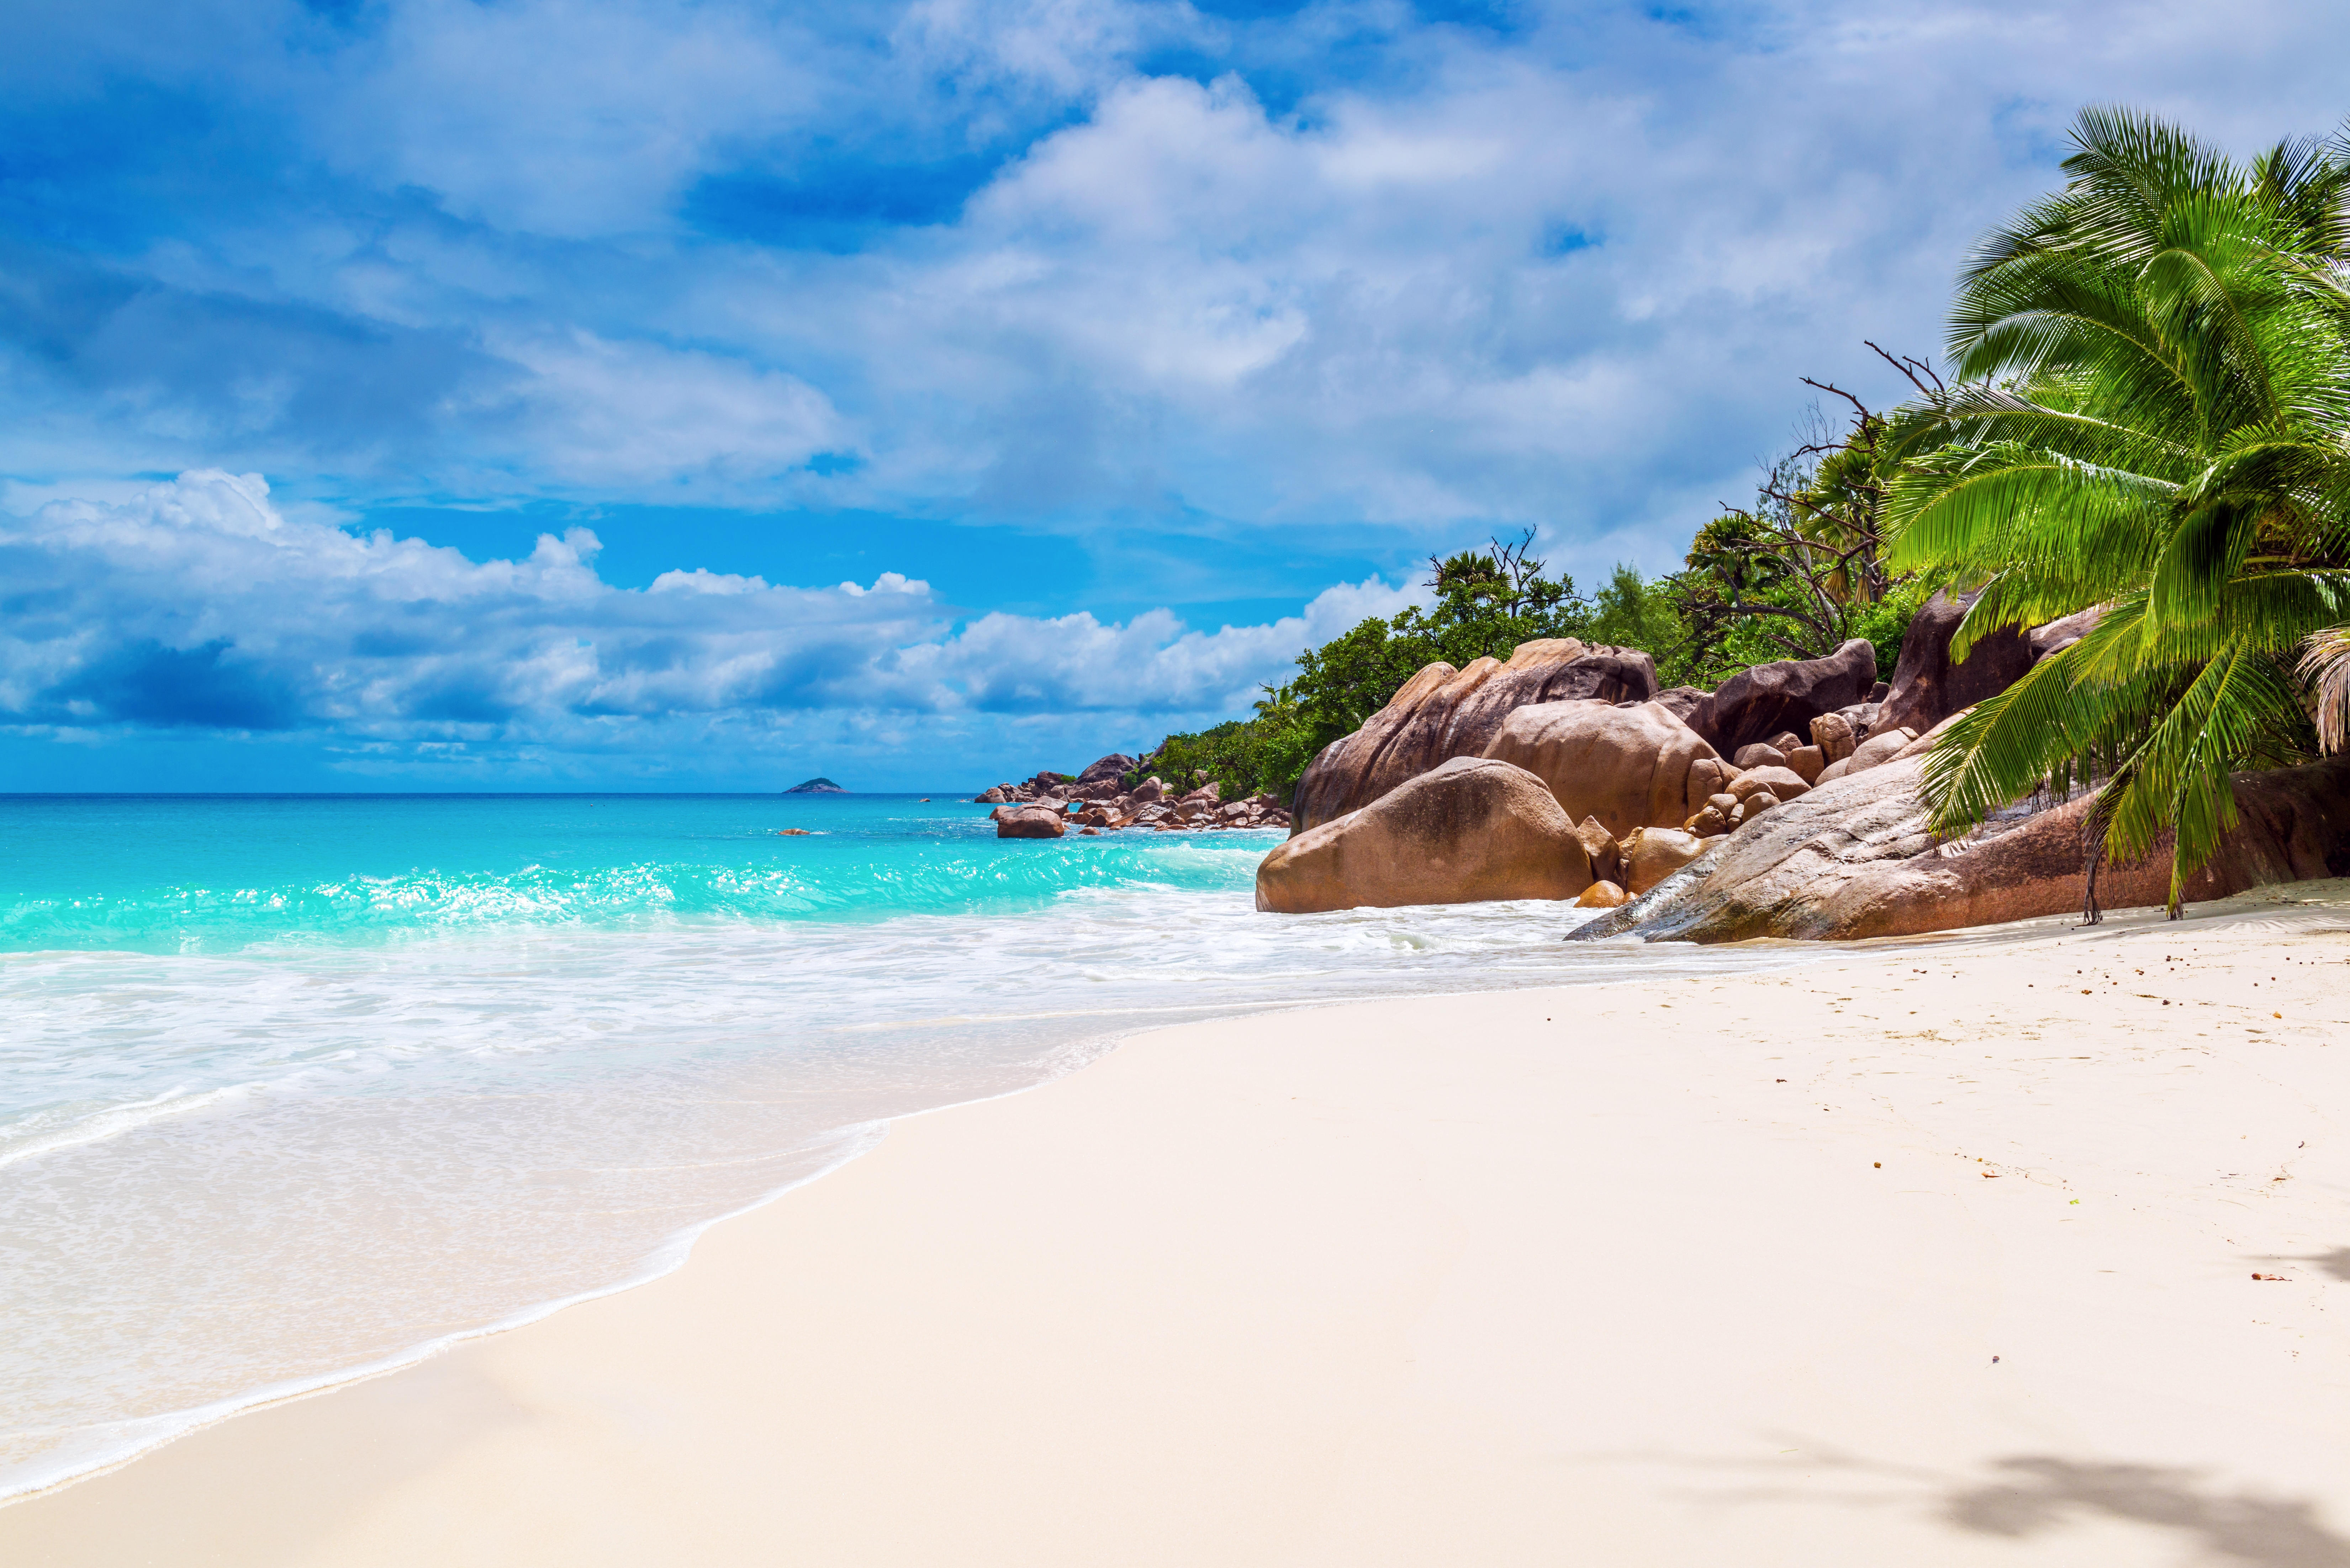 Бесплатное фото Телефон на пляж, сейшельские острова качественные обои